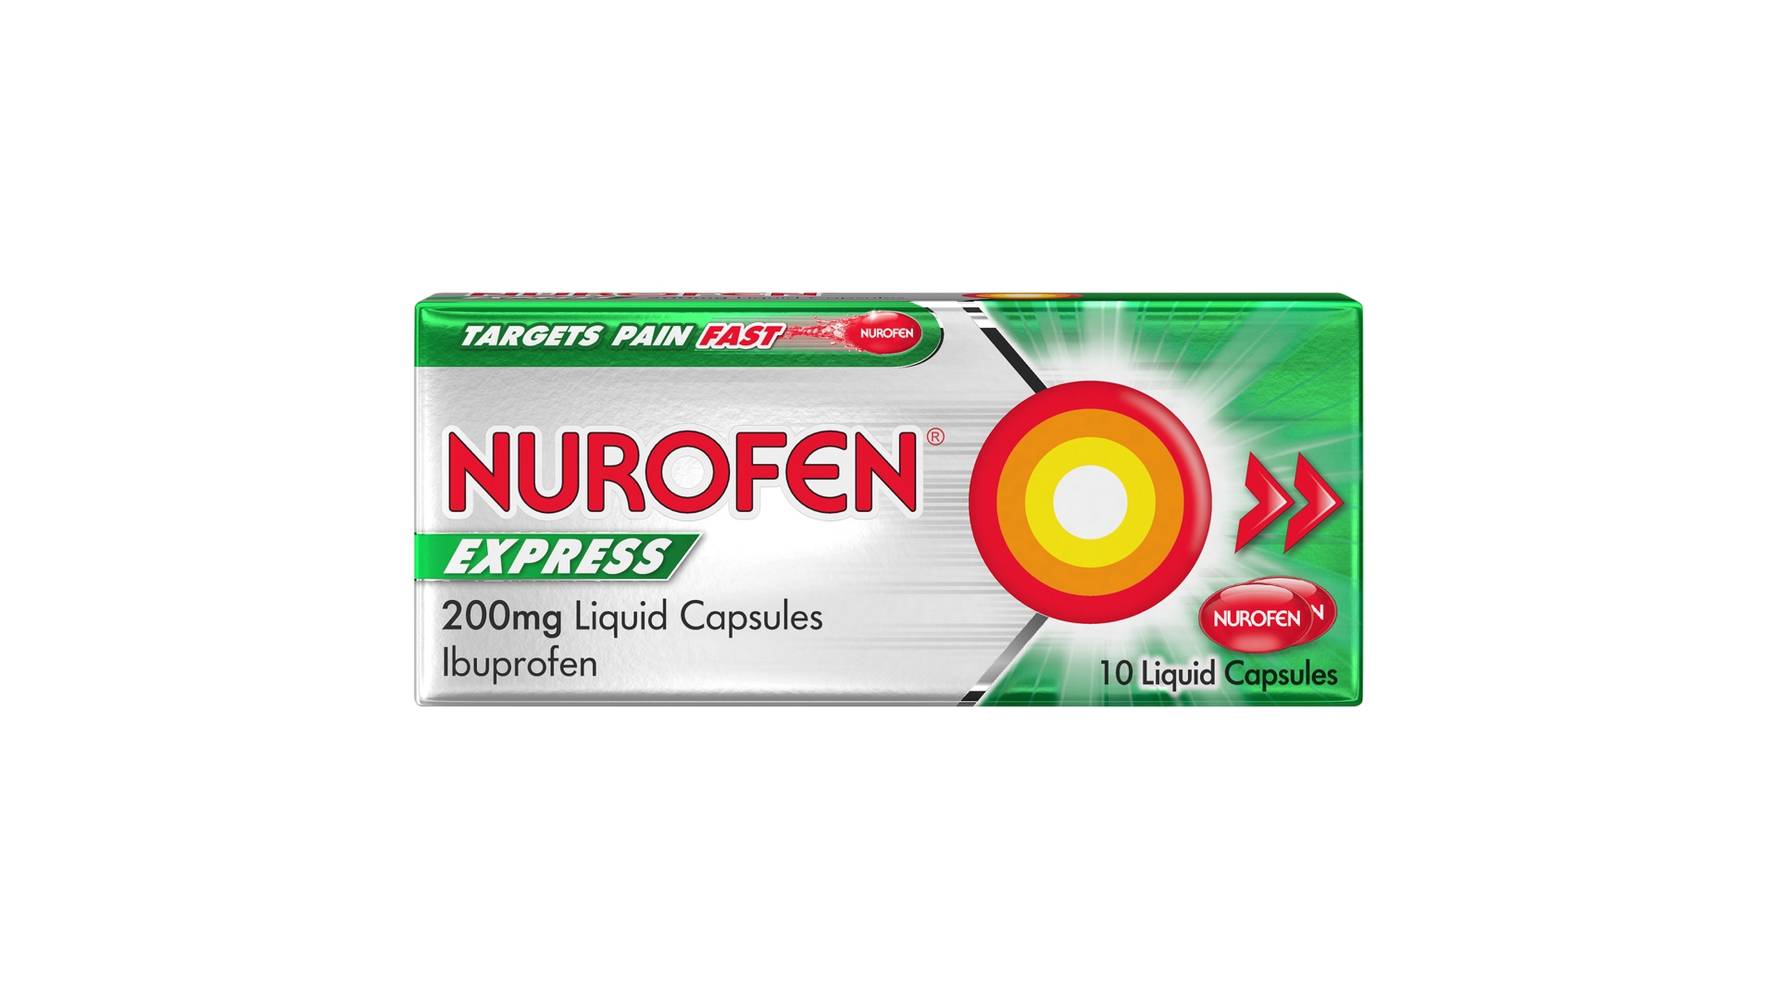 Nurofen Express Pain Relief 200mg Liquid Capsules (10 ct)